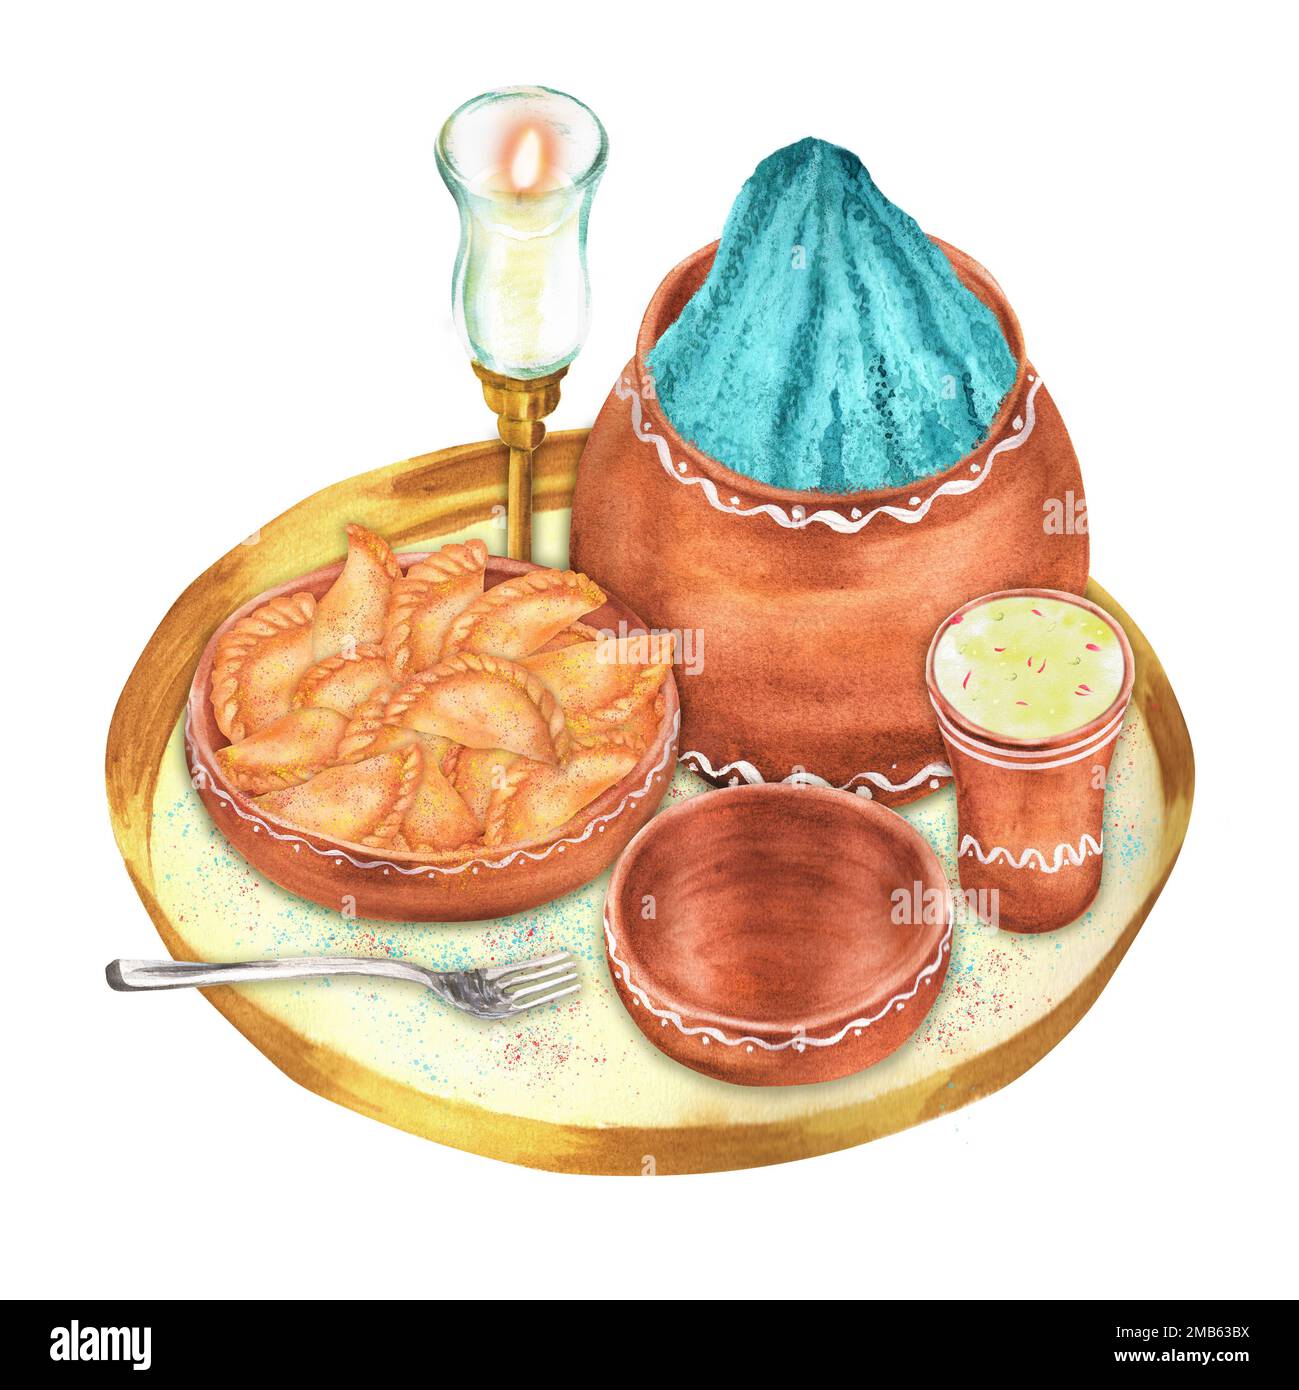 Handgezeichnete Aquarellfarben-Komposition für die Feierlichkeiten in Holi: Thandai-Getränk, Gujiya, Pulverfarbe und Kerze auf dem Tablett. Ein Teil des großen Holi-Sets der Illu Stockfoto